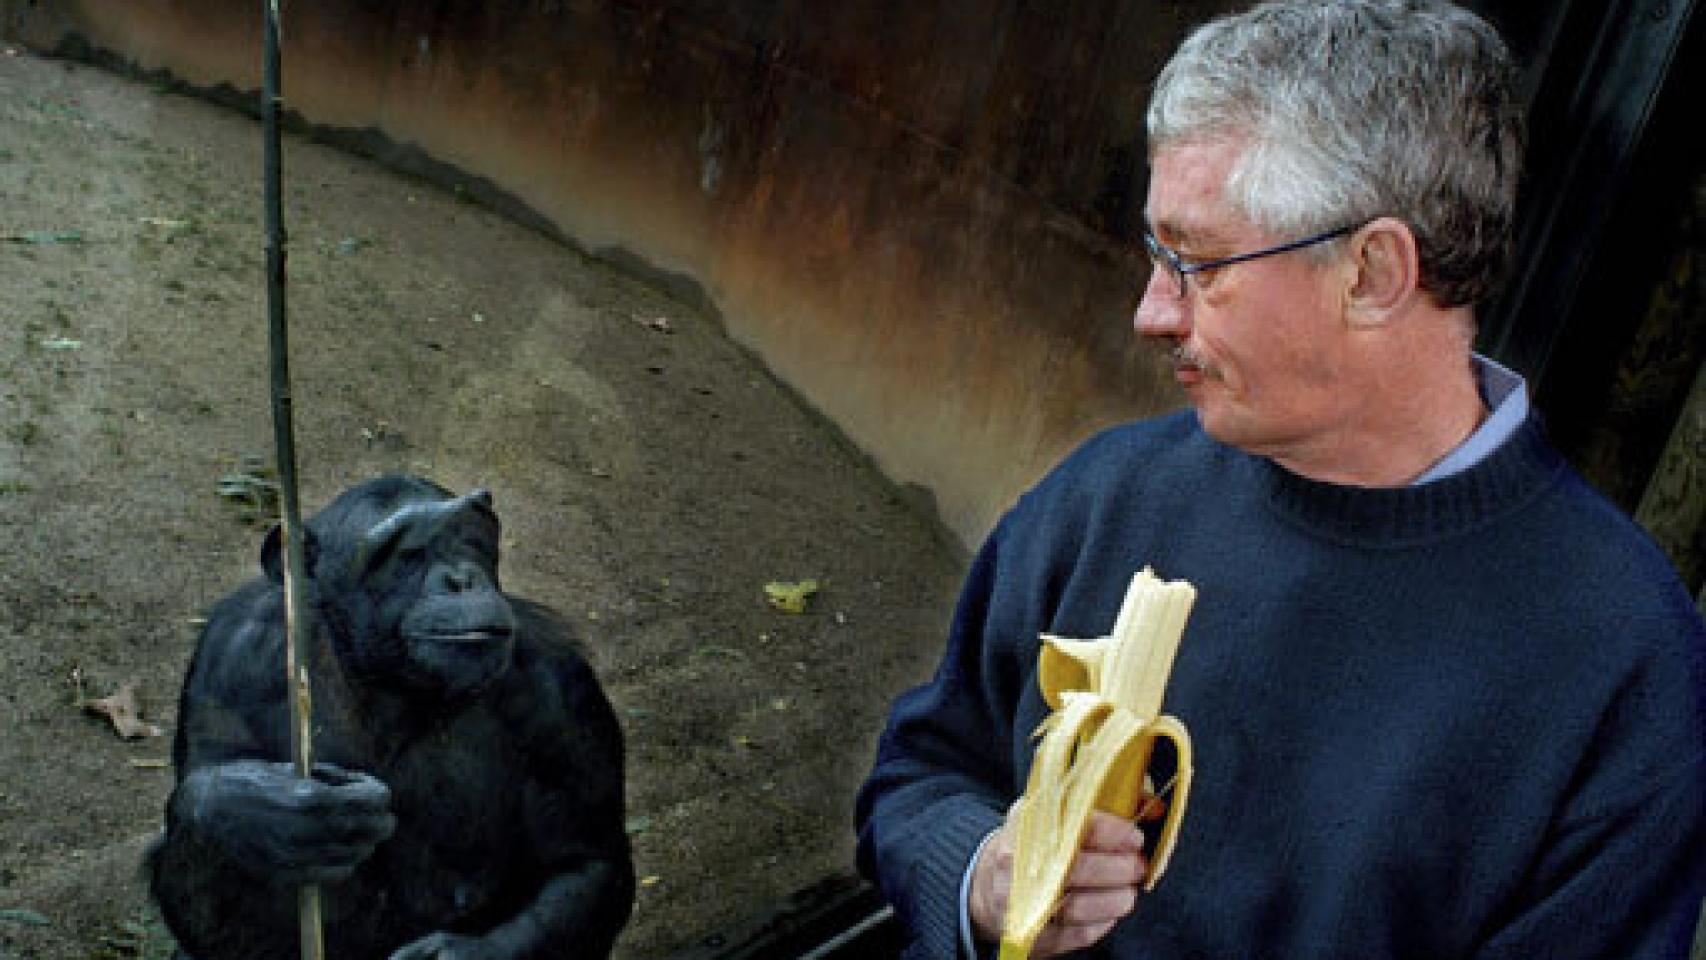 Image: El bonobo y los diez mandamientos. En busca de la ética entre los primates